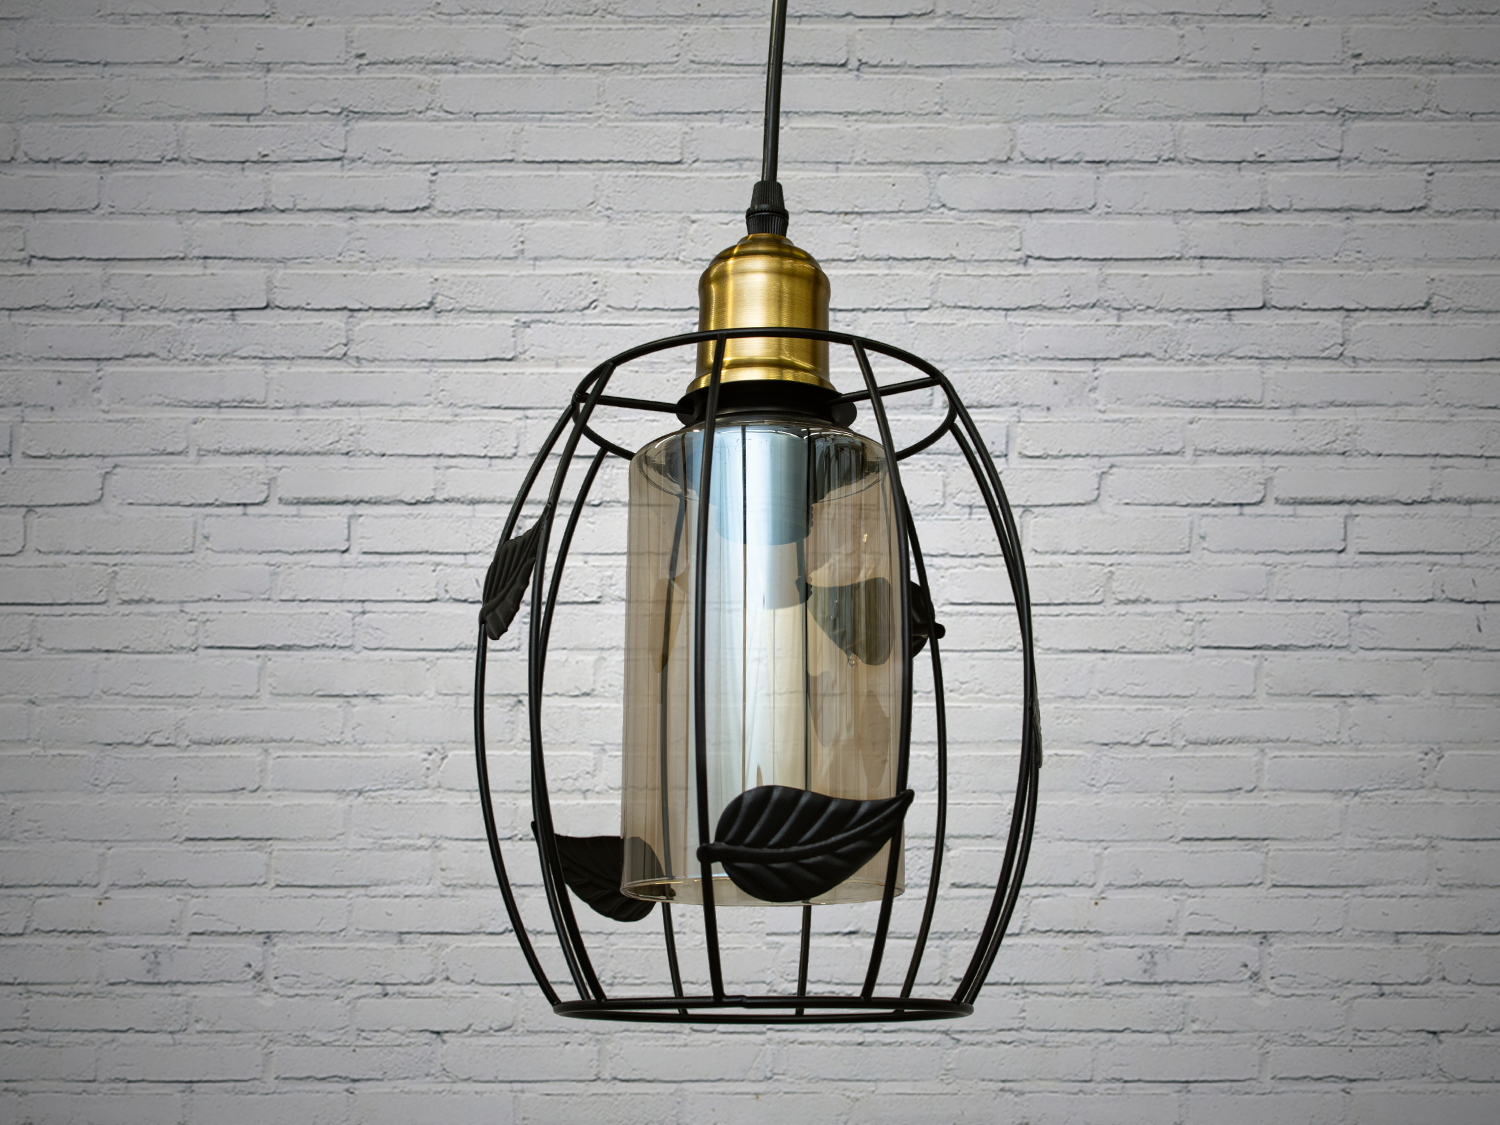 Світильник-підвіс в стилі лофт, який ідеально підходить під лампочку Едісона, об'єднує у собі вишуканість  та  індустріальний шарм. Його дизайн підкреслює автентичність та теплоту лампочки Едісона, створюючи унікальний елемент декору та освітлення.
Характеристики світильника:
Лампа Едісона як центральний елемент: Спеціально розроблений дизайн, що виділяє та підкреслює лампу Едісона як центральний елемент світильника. Застосування лампи Едісона з декоративними нитками або нестандартною формою додає виробу вишуканості та тепла. Лампочка Едісона надає приємне приглушене світло, створюючи тепло та затишну атмосферу в місці розташування світильника.
Матеріали з індустріальним виглядом: Використовуються металеві або чорні матеріали, що надають індустріальний шарм та вишуканість. Мінімалізм цього світильника підкреслить вашу індивідуальність і відчуття стилю. Металеві елементи можуть мати сліди старіння, підряпини чи інші недоліки, що є характерними для стилю лофт та надають світильнику виразний вигляд.
Лофтовий дизайн: З підвісом у вигляді ланцюга чи троса, грубими металевими деталями та відкритим дизайном, що додає стиль лофту. Стиль «Лофт» зараз дуже популярний, його люблять як творчі особистості, так і вельми практичні люди, які віддають перевагу комфорту і простоті в інтер'єрі. Світильники в стилі «лофт» ідеально впишуться в сучасні будинки, квартири, кафе, арт-простори, коворкінги, квеструми.
Підвісний світильник ідеально поєднується з іншими індустріальними деталями, такими як відкриті труби, цегла або металеві стільниці.
Можливість регулювання висоти: Дозволяє легко адаптувати світильник до різних просторових умов.
Сфери використання:
Ресторани та кафе: Створює тепло та затишне освітлення, ідеально підходить для створення атмосфери в зонах обіду або бару.
Житлові приміщення: Виглядає чудово у вітальнях, кухнях чи спальнях, додаючи індустріальний акцент до інтер'єру.
Магазини та виставкові зони: Створює стильний вигляд для приміщень, де важливий дизайн та видиму привабливість. Вигідно підкреслює стильні товари або предмети мистецтва, надаючи їм індивідуальний вигляд.
Фото- та відеостудії: Забезпечує освітлення з характером для створення унікальних фото чи відеоматеріалів.
Цей світильник-підвіс у стилі лофт з лампочкою Едісона створює особливу атмосферу, де тепло та стиль індустріального дизайну взаємодіють, надаючи приміщенню унікальний і вишуканий вигляд.
Лампа в комплект не входить.